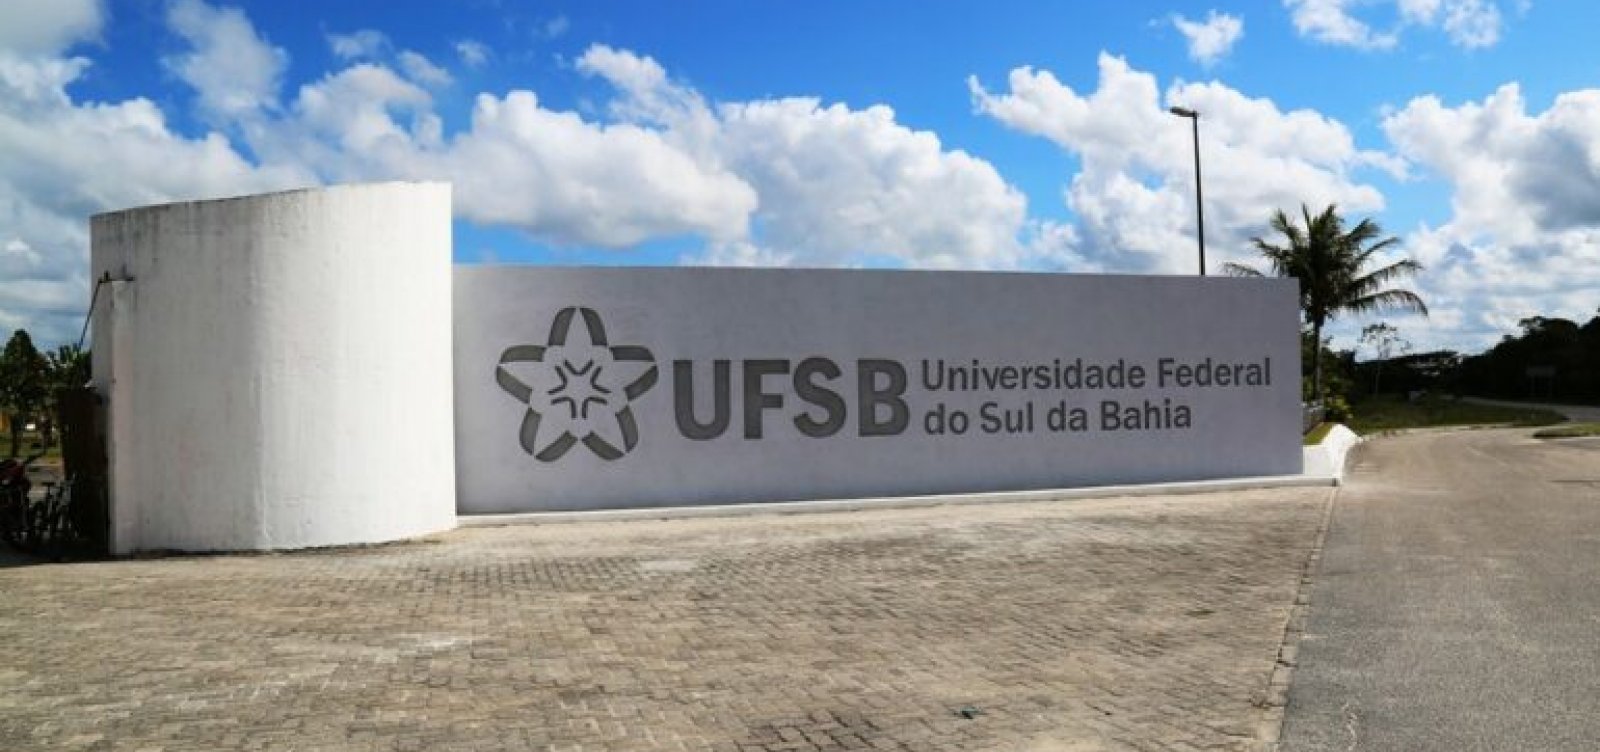 Universidade Federal do Sul da Bahia abre concurso público para professor